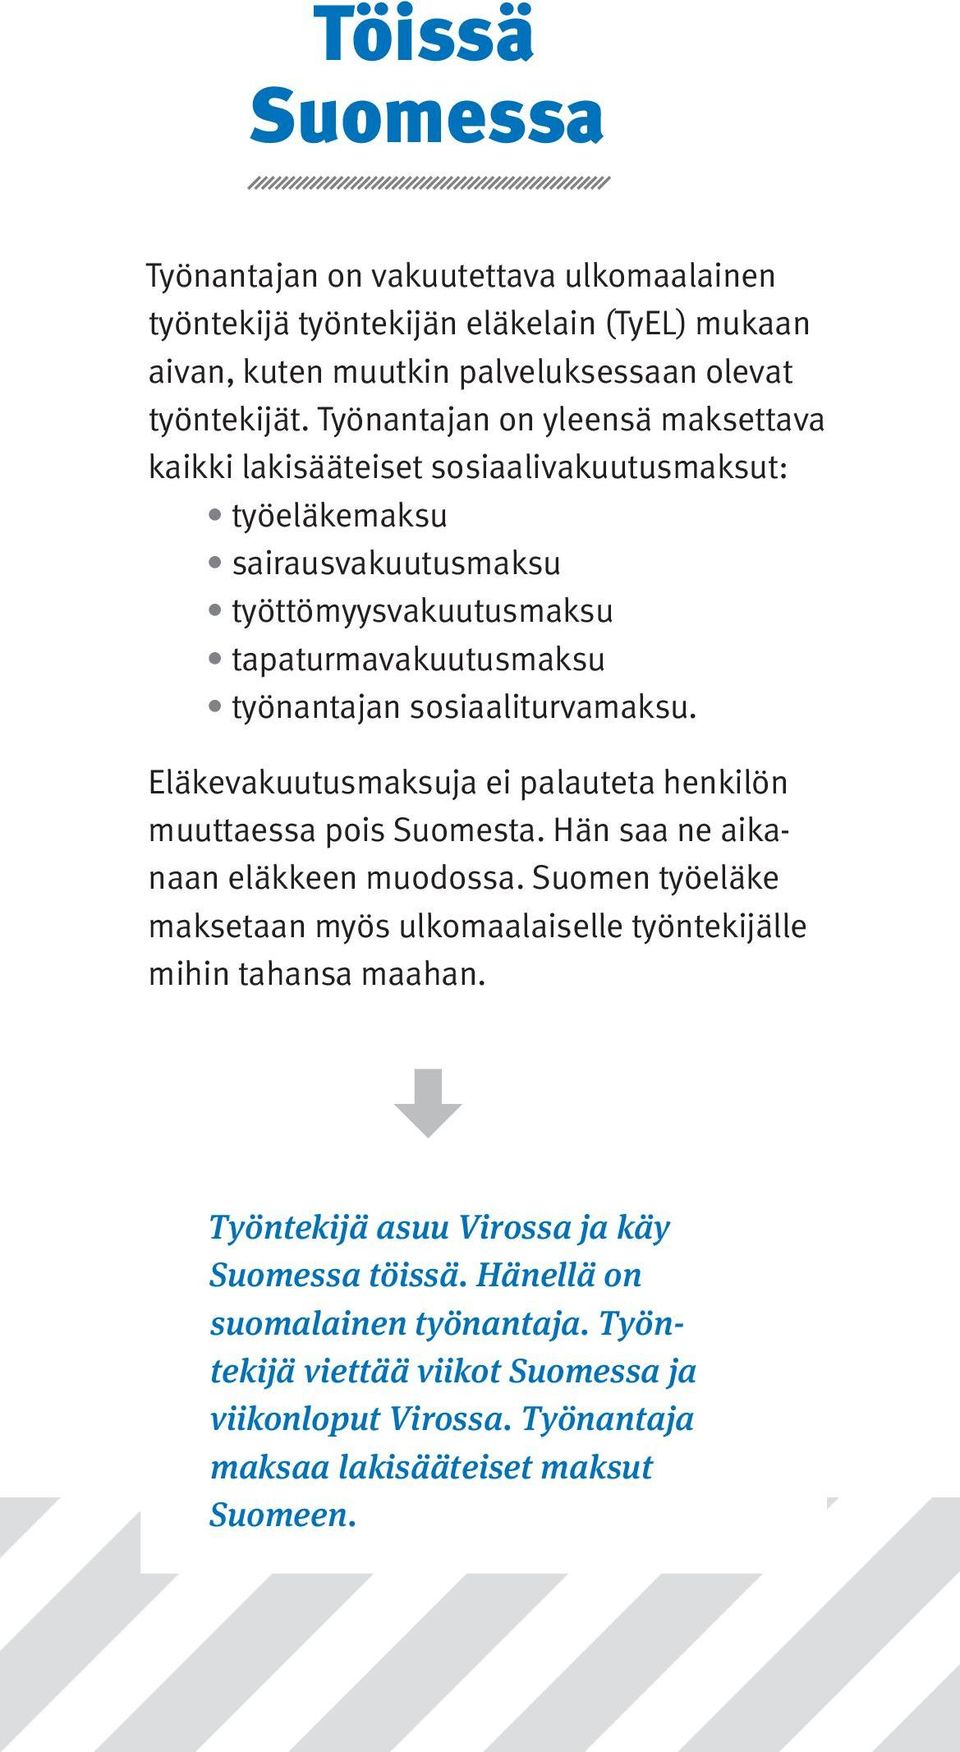 sosiaaliturvamaksu. Eläkevakuutusmaksuja ei palauteta henkilön muuttaessa pois Suomesta. Hän saa ne aikanaan eläkkeen muodossa.